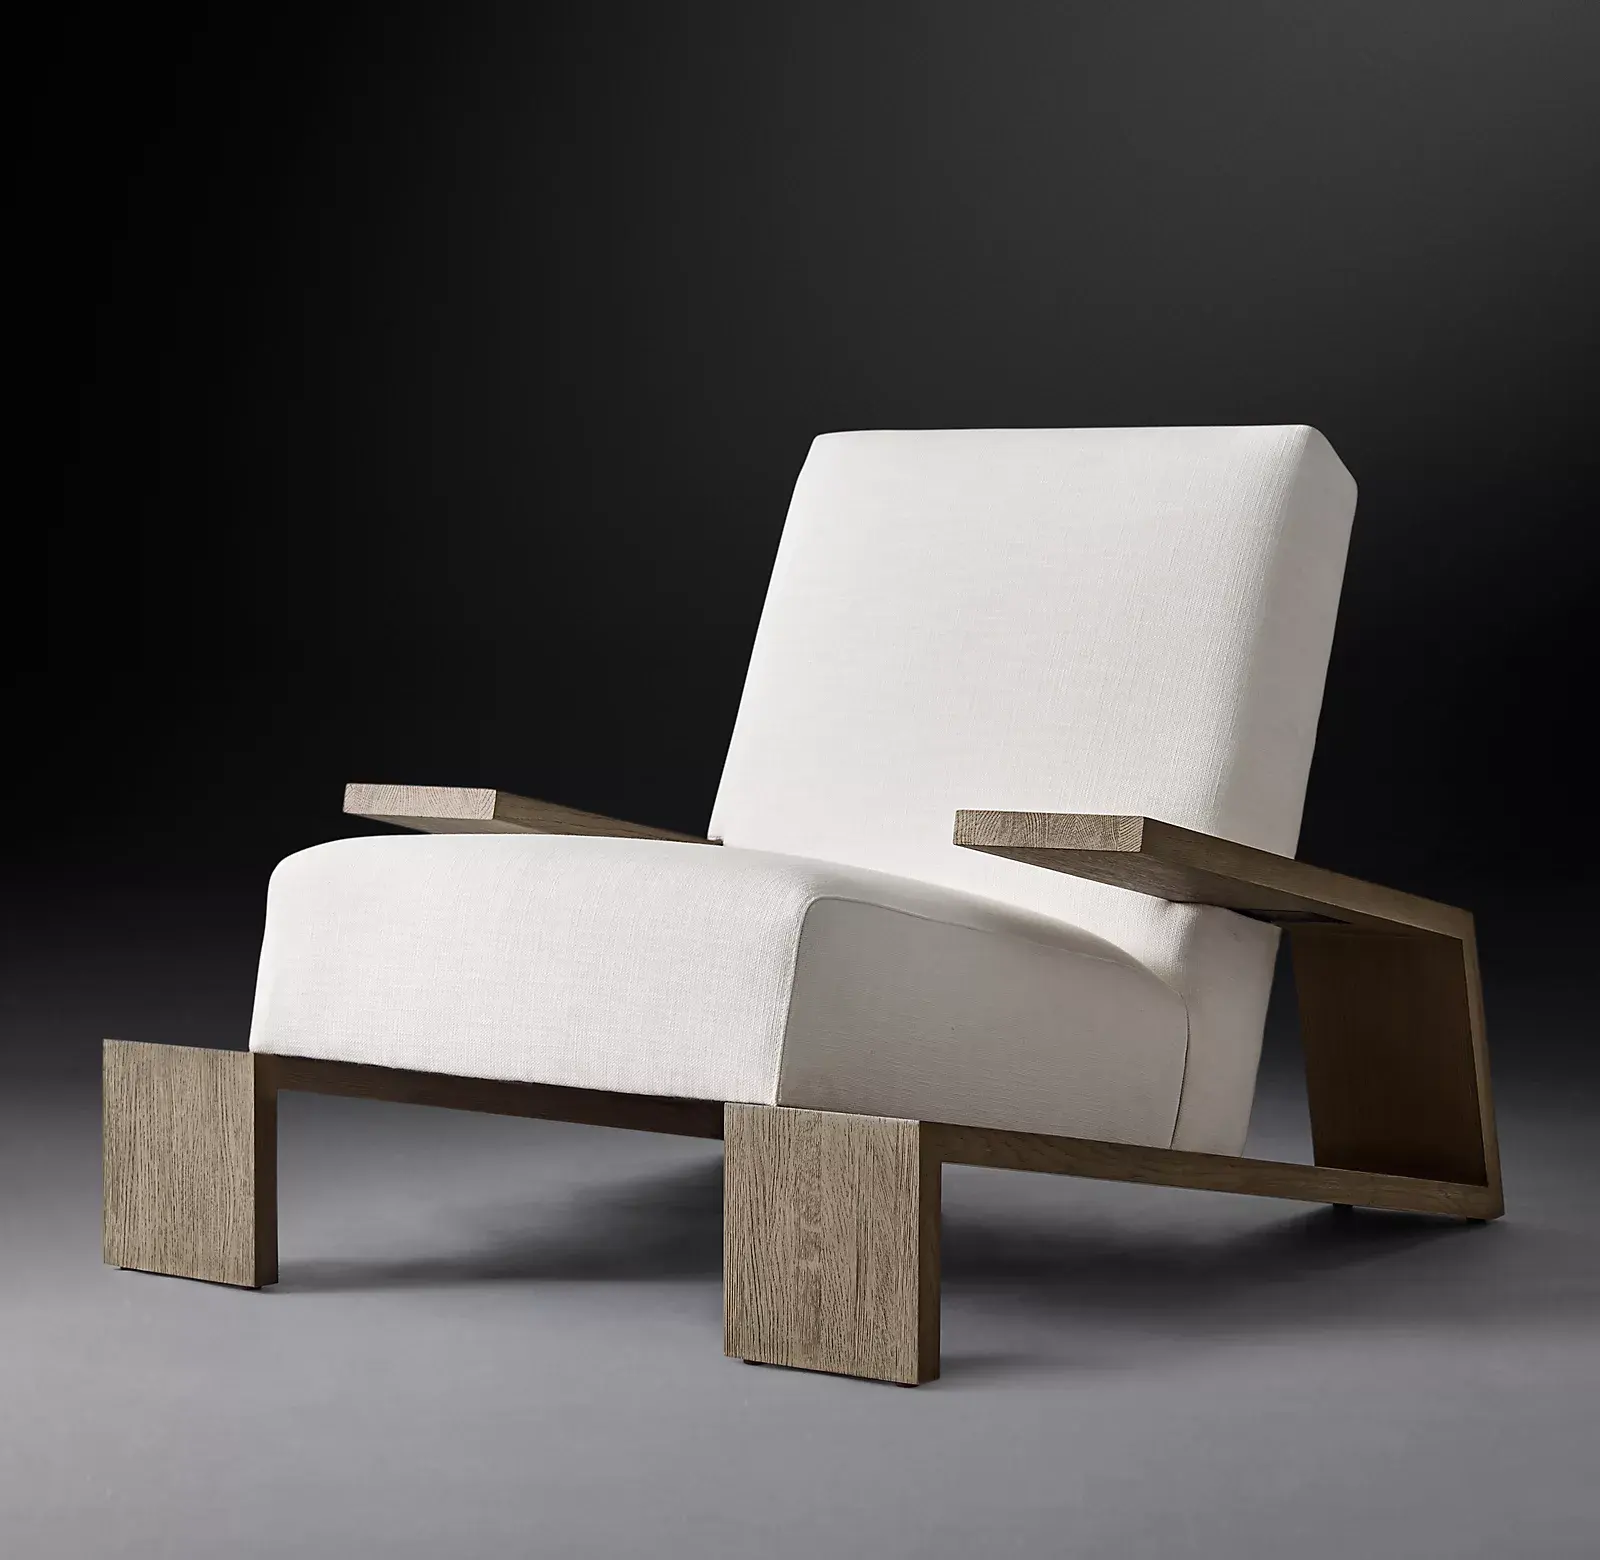 Sassanid ชุดห้องนั่งเล่นหรูหรากว้างขวางออกแบบได้อย่างทันสมัย,เก้าอี้แคสเซิลสไตล์ฝรั่งเศสดีไซน์เรียบง่ายโดดเด่น